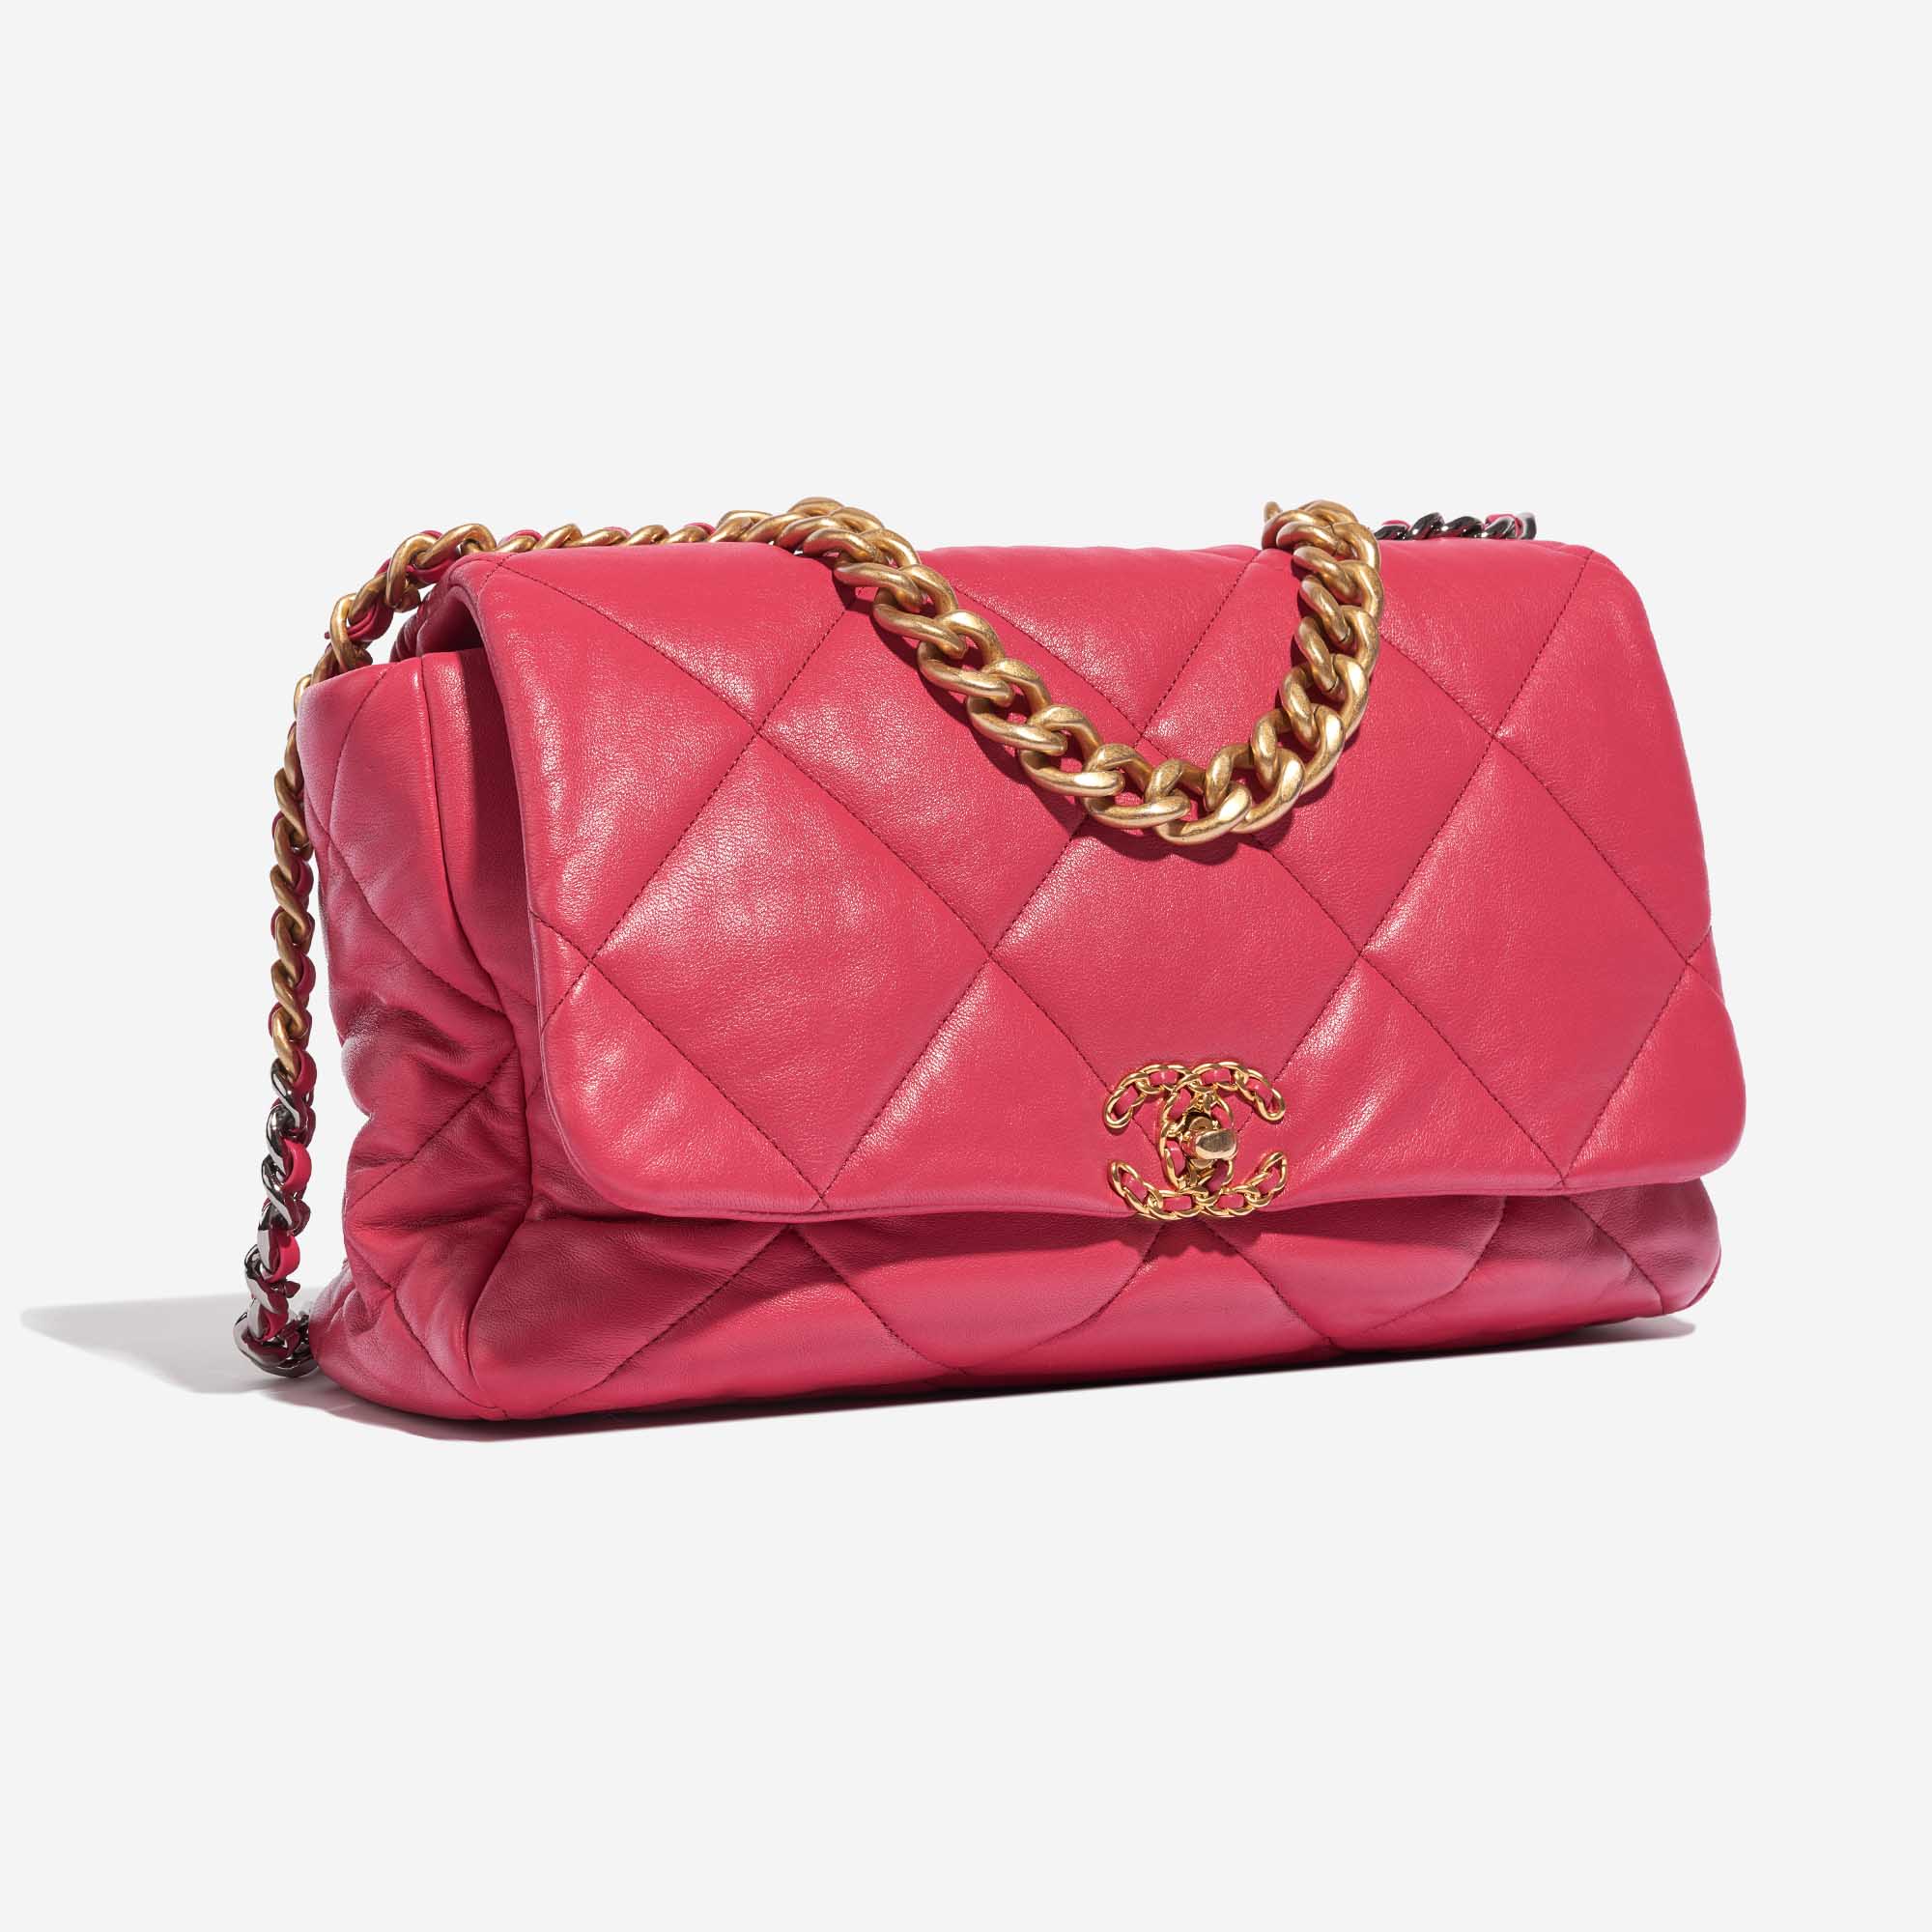 Pre-owned Chanel Tasche 19 Maxi Flap Bag Lammleder Pink Pink Side Front | Verkaufen Sie Ihre Designer-Tasche auf Saclab.com